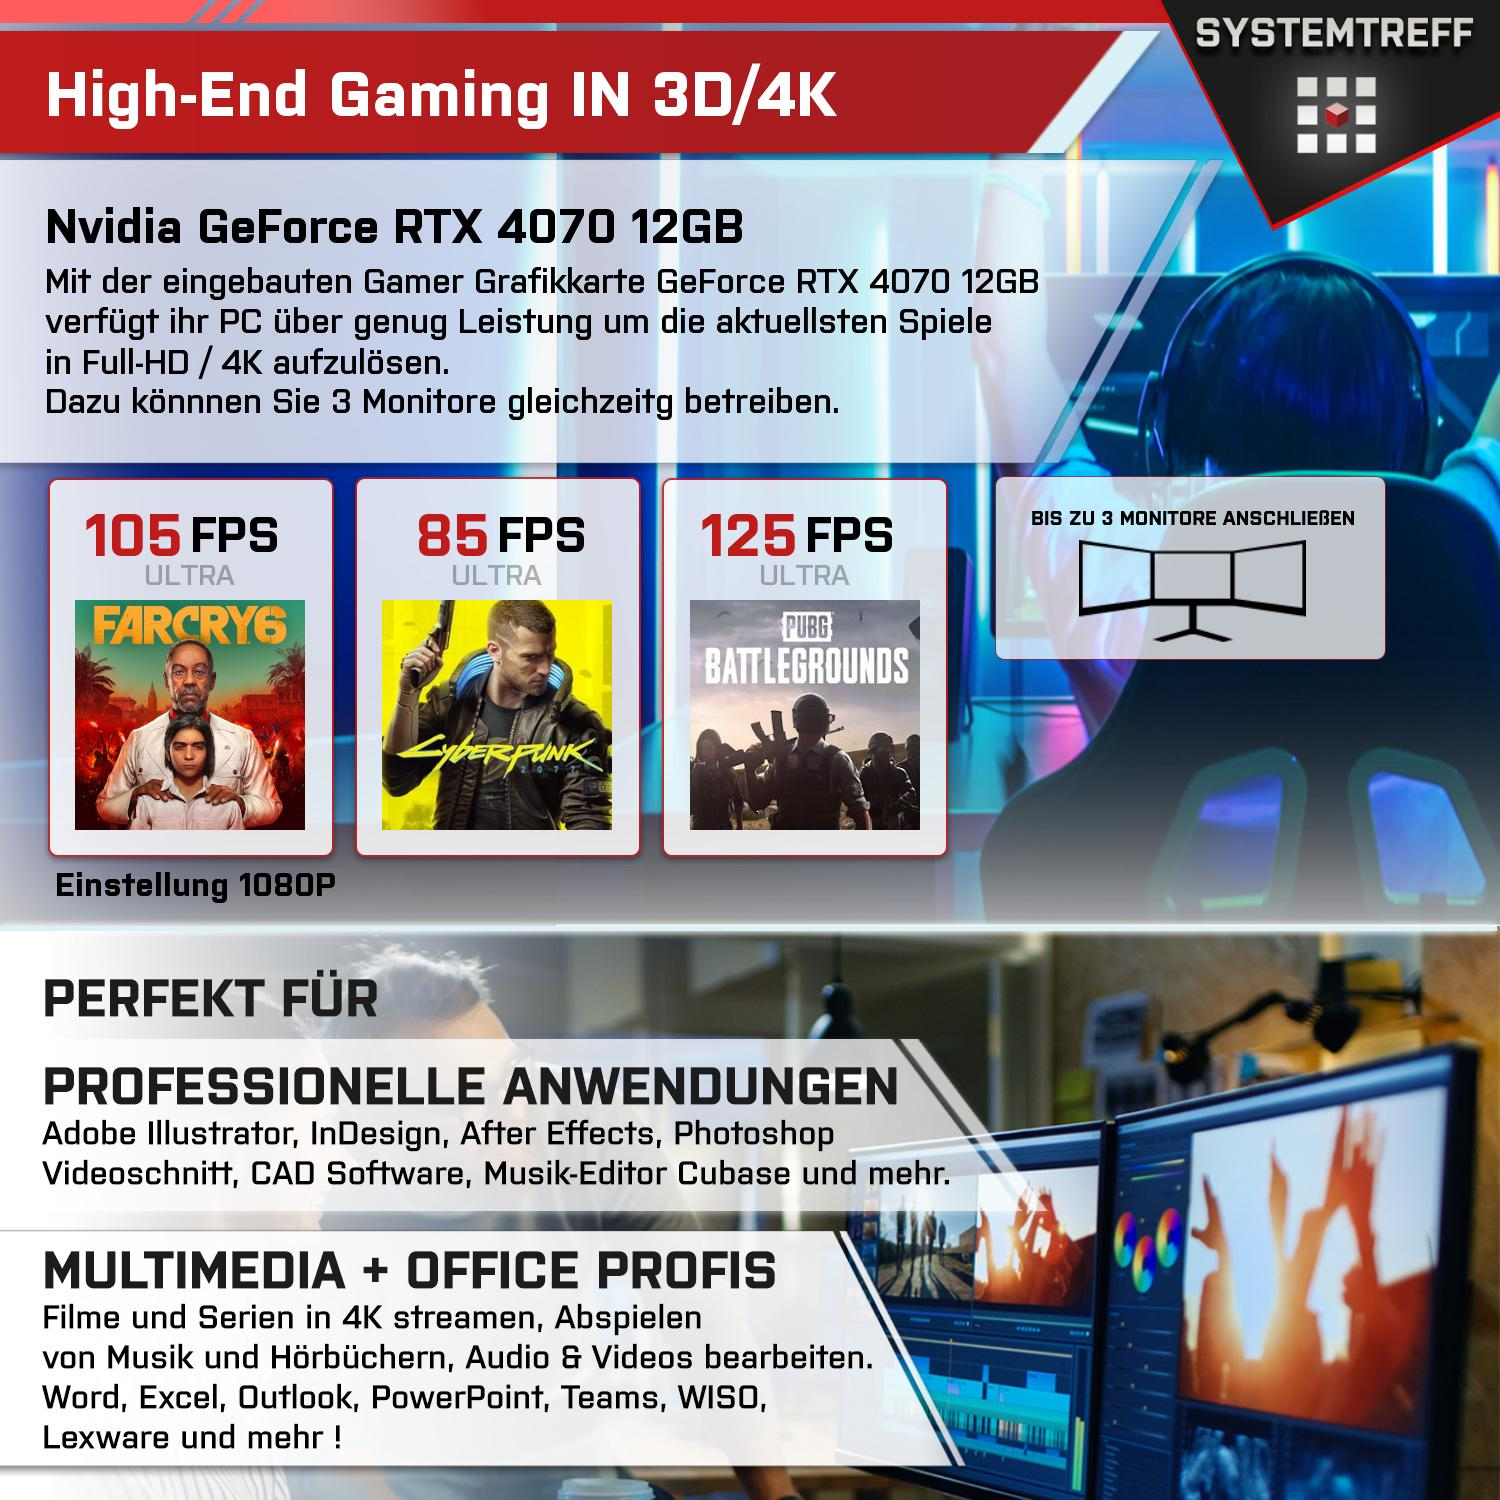 SYSTEMTREFF Gaming Komplett AMD Ryzen 12 7600X, RTX mit 12GB 4070 PC 5 Nvidia mSSD, RAM, GB GB GeForce GB Prozessor, 7600X 32 1000 GDDR6, Komplett